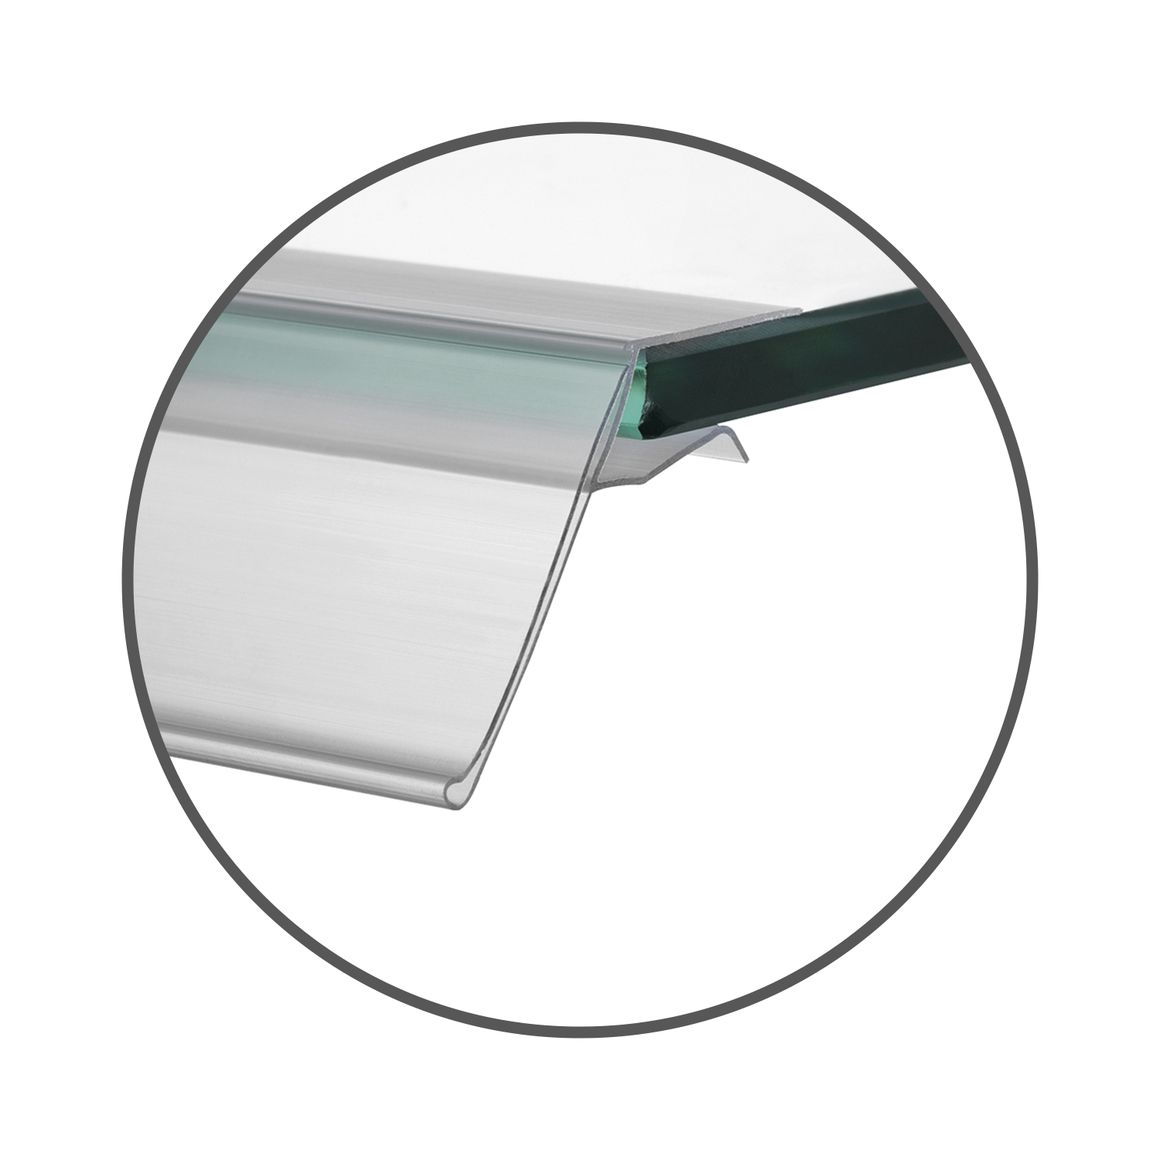 Scannerschiene für Glasboden oder Holzboden am Regal